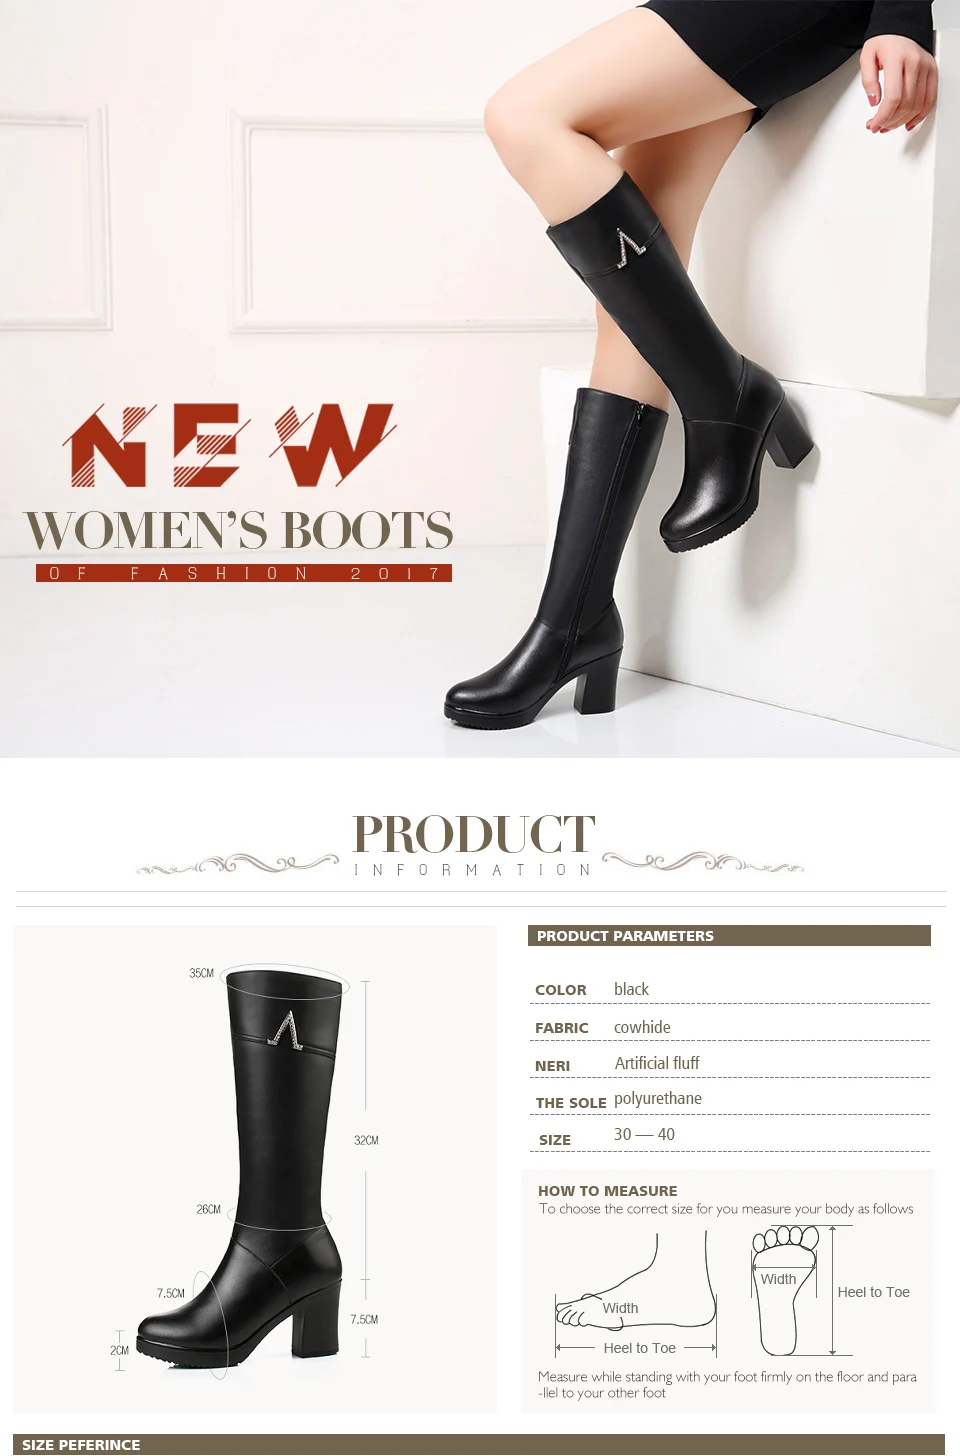 AIYUQI, новые зимние сапоги из натуральной кожи женская обувь женские высокие сапоги до середины икры на высоком каблуке теплые зимние сапоги модная женская обувь